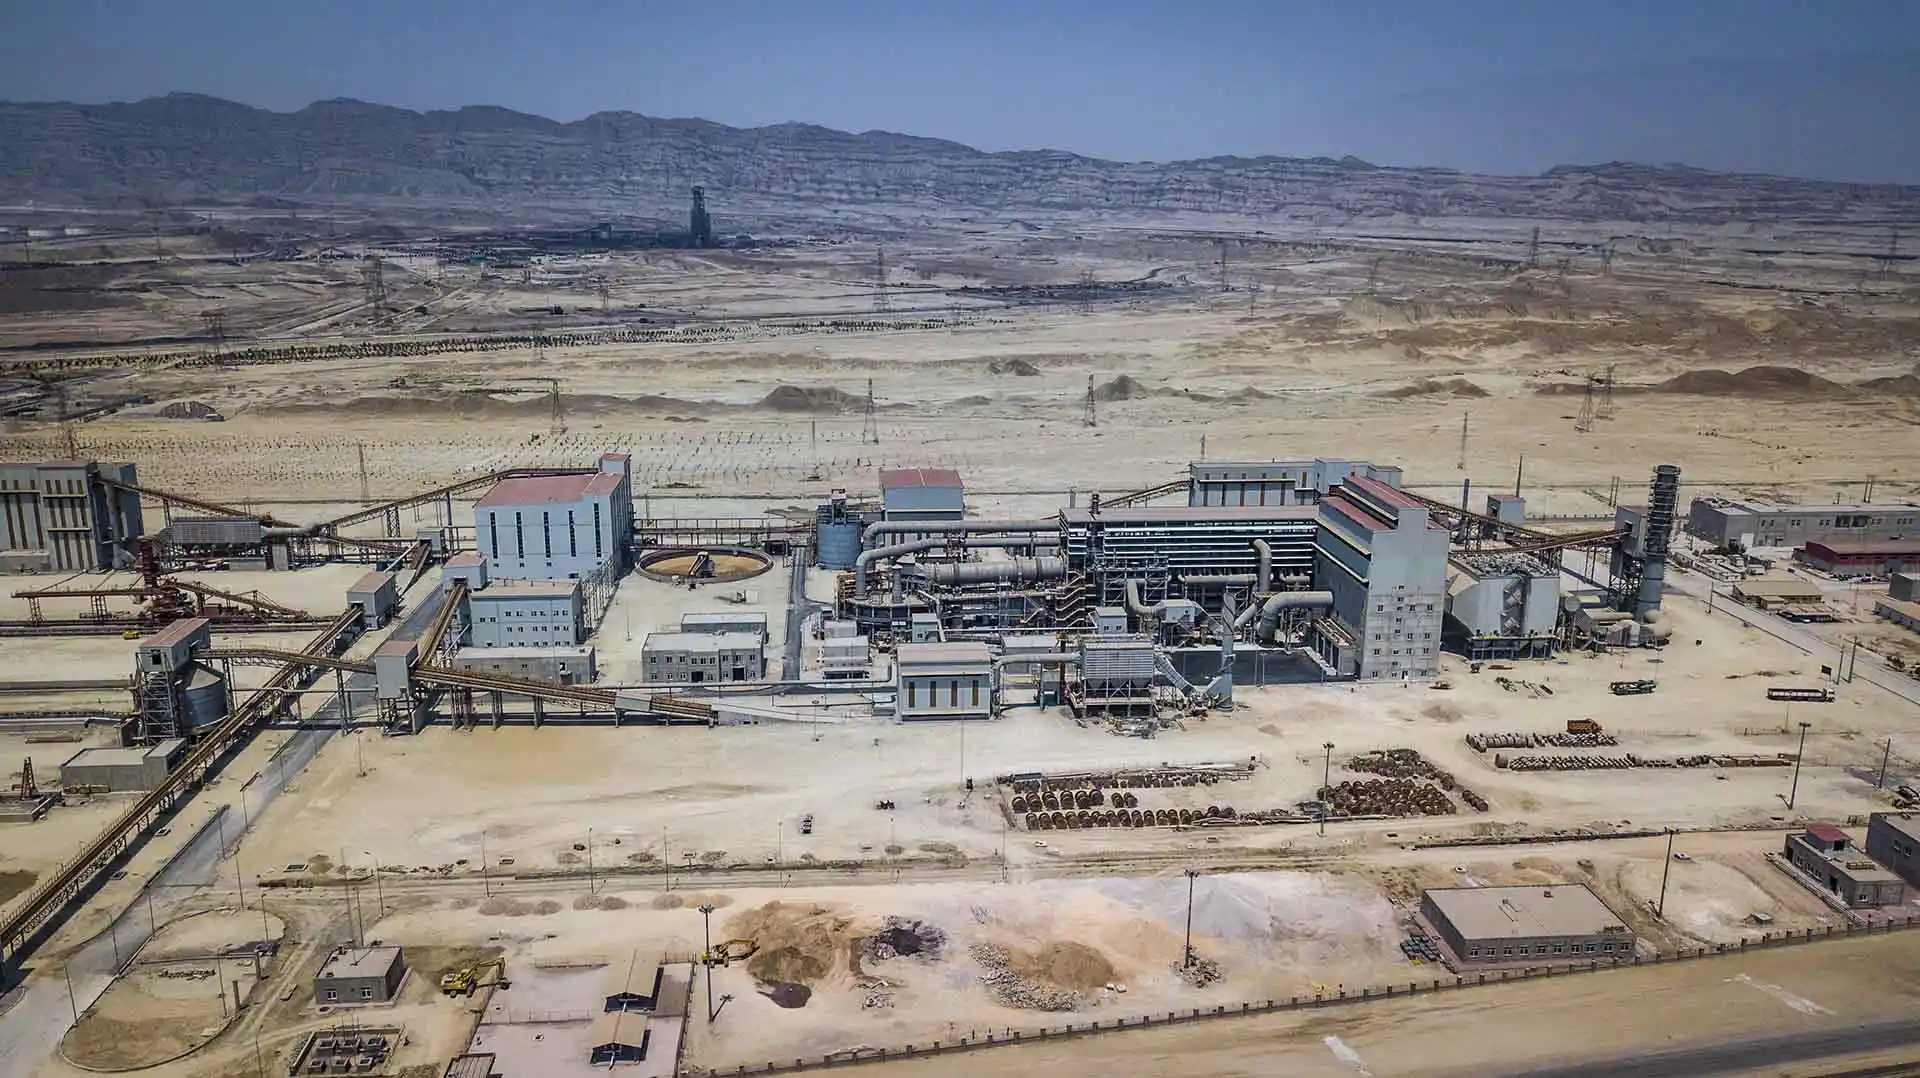 5mt The Maad Koush iron ore pelletizing plant